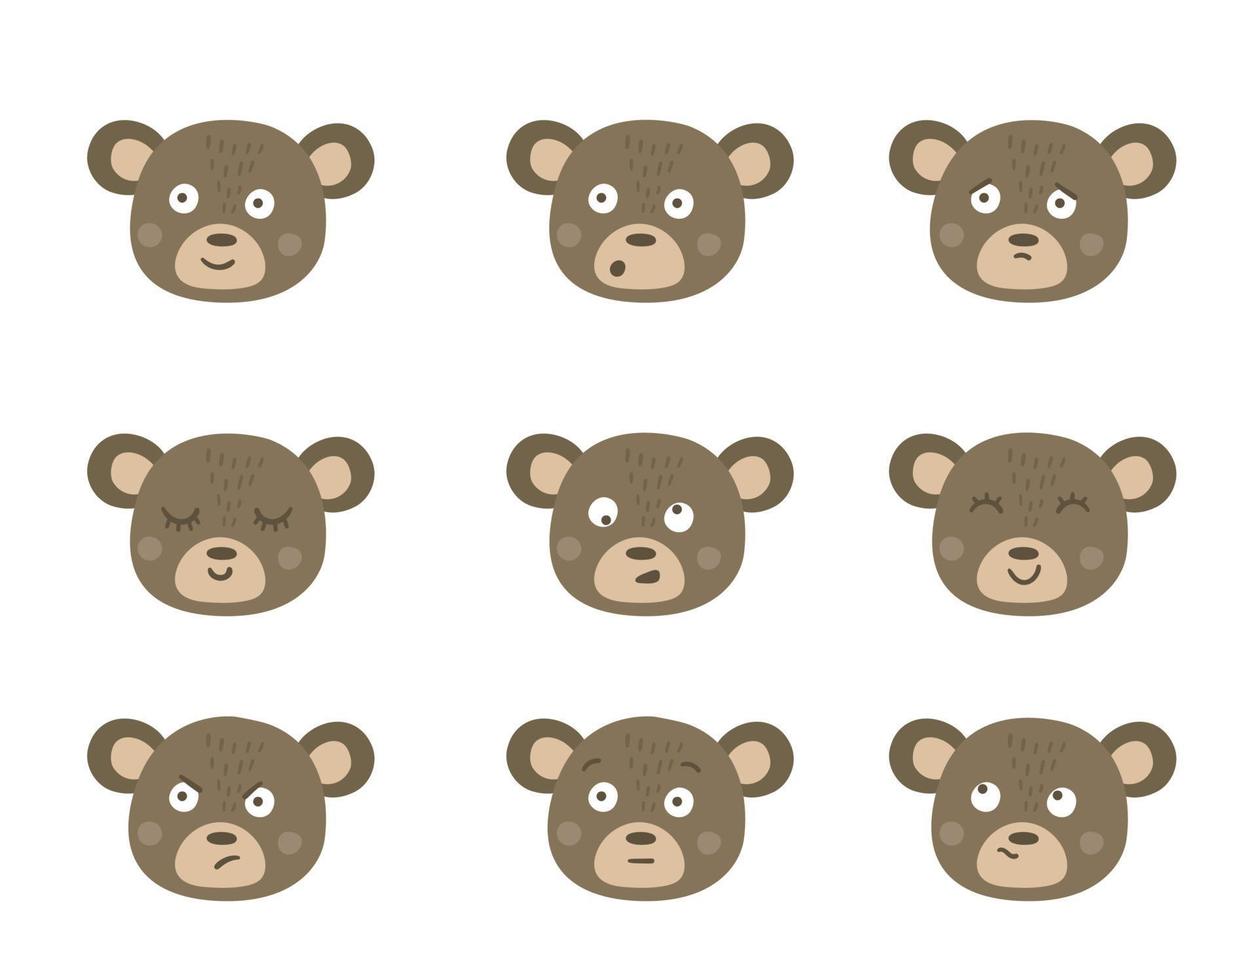 vektor björn ansikten med olika känslor. set med djur-emoji-klistermärken. huvuden med roliga uttryck isolerad på vit bakgrund